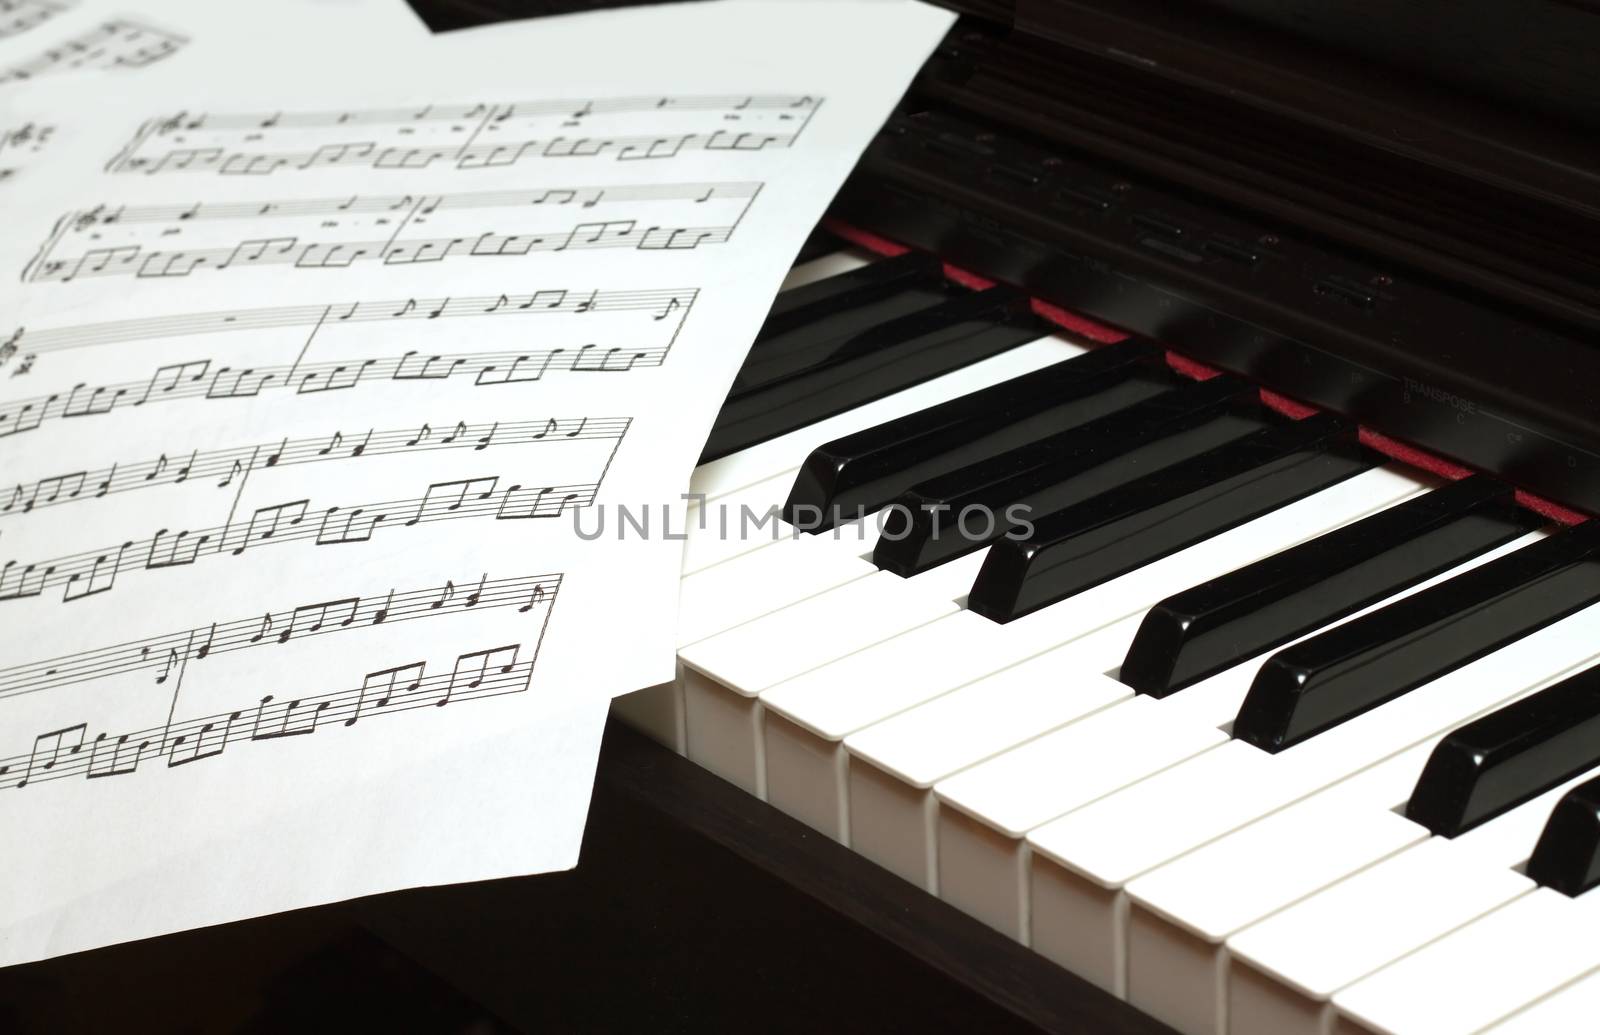 Piano keyboard and music sheets by dymaxfoto